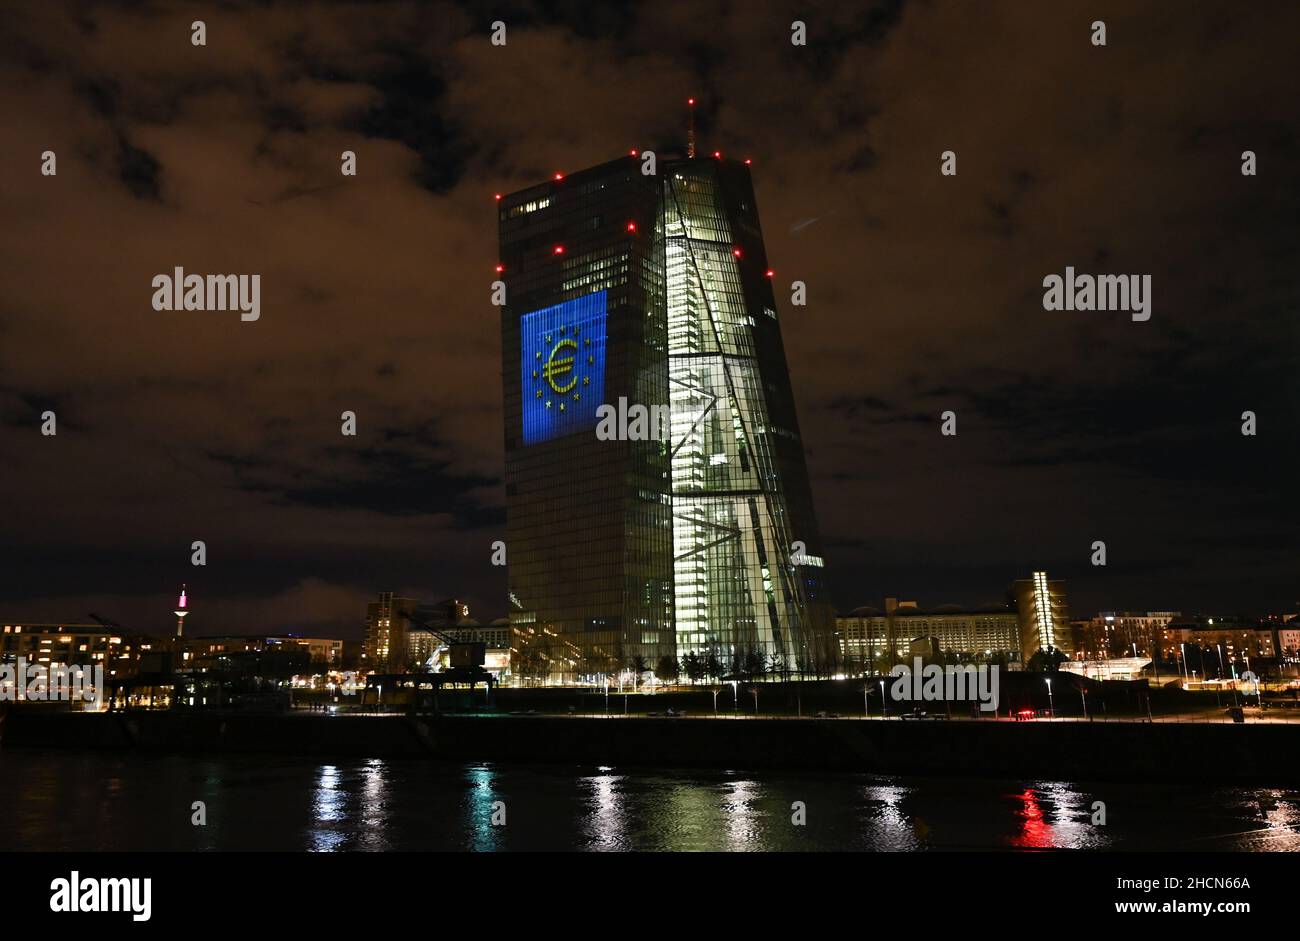 30 décembre 2021, Hessen, Francfort-sur-le-main : lors d'un essai, le symbole de l'euro est projeté sur la façade sud du siège de la Banque centrale européenne (BCE) dans l'est de Francfort.Il y a 20 ans, à la Saint-Sylvestre, la monnaie européenne commune, l'euro, a été introduite dans douze pays de l'UE.Pour l'Allemagne, cela signifiait dire Au revoir au D-Mark.Du 31 décembre 2021 au 9 janvier 2022, la façade de la BCE sera illuminée dans la soirée.Photo: Arne Dedert/dpa Banque D'Images